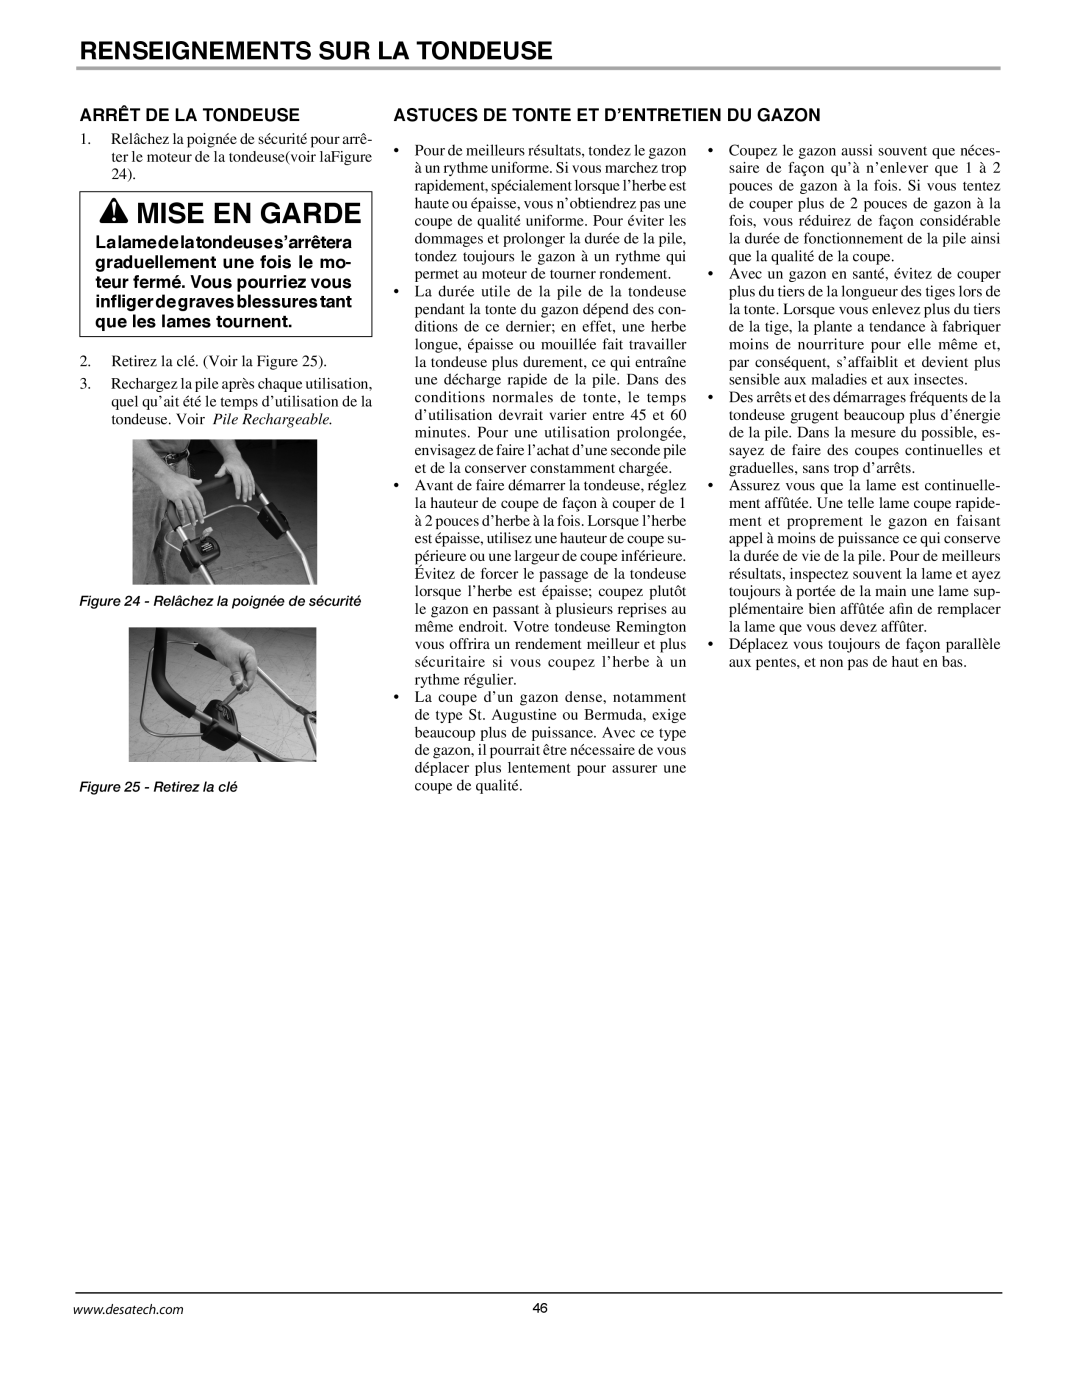 Remington Power Tools MPS6017A manual Mise En Garde, Renseignements Sur La Tondeuse, Arrêt De La Tondeuse 